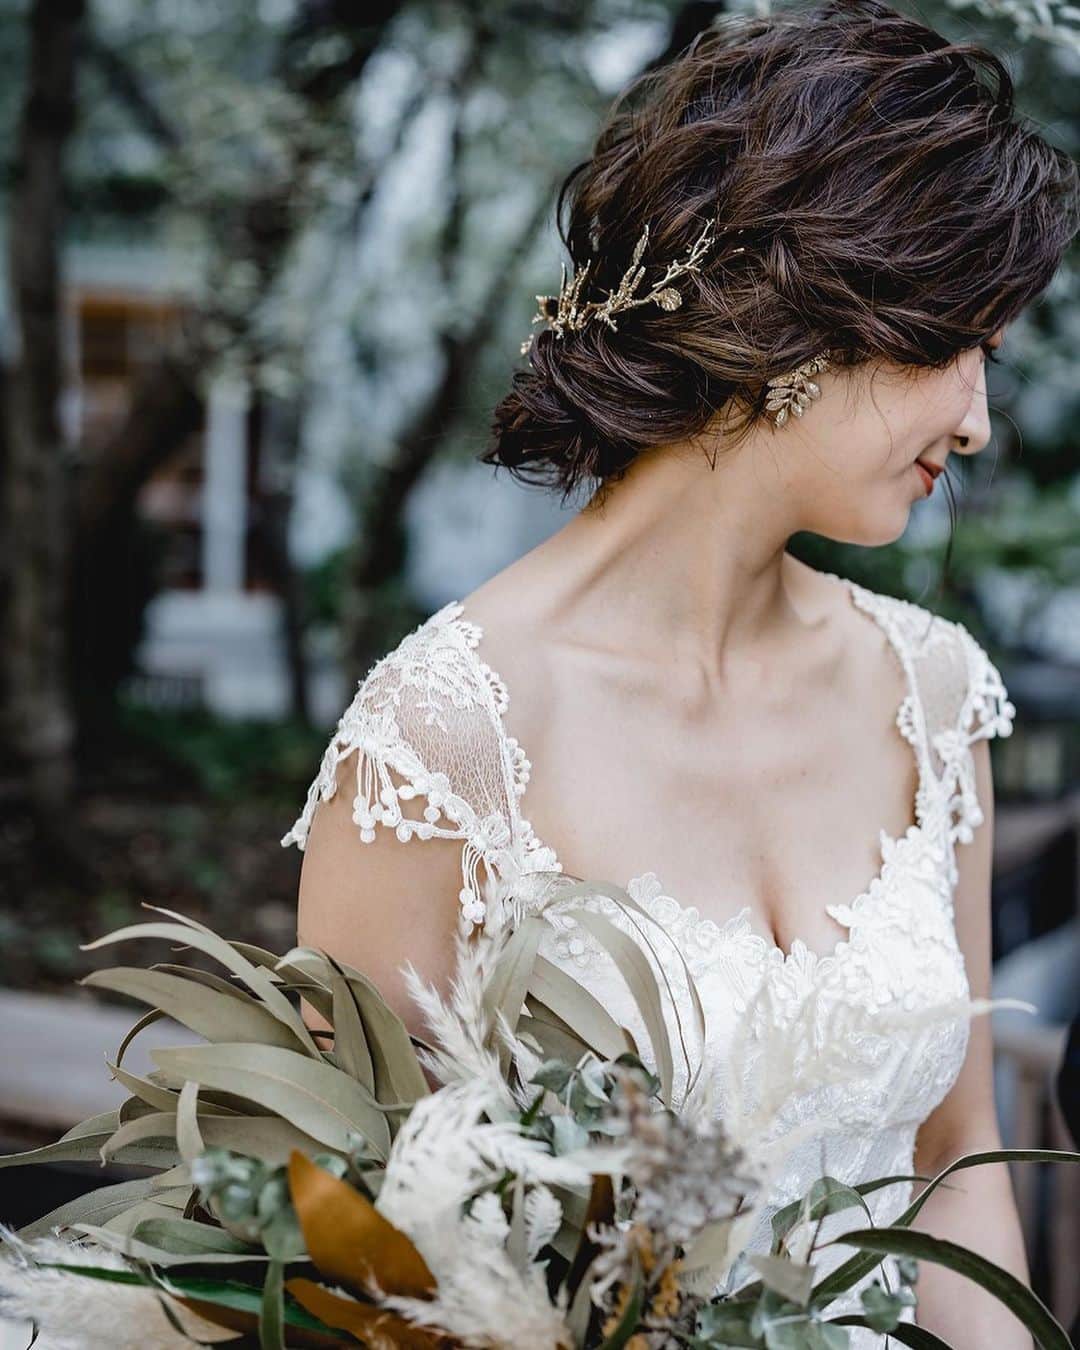 ARCH DAYS Weddingsさんのインスタグラム写真 - (ARCH DAYS WeddingsInstagram)「ドレス迷子の花嫁さんへ！﻿ ﻿ ヴィンテージかつボヘミアンな雰囲気を取り入れつつも、ロマンティックな世界観を持つ唯一無二のコレクションが魅力。﻿ ﻿ おしゃれ花嫁さんたちから絶大な支持を誇る #クレアペティボーン のドレスをご紹介💐✨﻿ ﻿ ﻿ ▽ARCH DAYSトップページはこちらから☑﻿﻿﻿﻿﻿﻿﻿﻿﻿﻿﻿﻿﻿﻿﻿﻿﻿﻿﻿﻿﻿﻿﻿﻿﻿﻿﻿﻿﻿﻿﻿ @archdays_weddings﻿﻿﻿﻿﻿﻿﻿﻿﻿﻿﻿﻿﻿﻿﻿﻿﻿﻿﻿﻿﻿﻿﻿﻿﻿﻿﻿﻿﻿﻿﻿﻿ プロフィールのリンクから👰🏻﻿﻿﻿﻿﻿﻿﻿﻿﻿﻿﻿﻿﻿﻿﻿﻿﻿﻿﻿﻿﻿﻿﻿﻿﻿﻿﻿﻿﻿﻿﻿﻿ ﻿﻿﻿﻿﻿﻿﻿﻿﻿﻿﻿﻿﻿﻿﻿﻿﻿﻿﻿﻿﻿﻿﻿ ﻿﻿﻿﻿﻿﻿﻿﻿﻿﻿﻿﻿﻿﻿﻿﻿﻿﻿﻿﻿﻿﻿﻿﻿﻿ #archdays花嫁 をつけて投稿して頂いた方にサイト掲載のお声がけをさせて頂く場合があります🕊🌿﻿﻿﻿﻿﻿﻿﻿﻿﻿﻿﻿﻿﻿﻿﻿﻿﻿﻿﻿﻿﻿﻿﻿﻿﻿﻿﻿﻿﻿﻿﻿﻿ ﻿﻿﻿﻿﻿﻿﻿﻿﻿﻿﻿﻿﻿﻿﻿﻿﻿﻿﻿﻿﻿﻿﻿﻿﻿﻿﻿﻿﻿﻿﻿﻿ ﻿————————-//-﻿﻿﻿﻿﻿﻿﻿﻿﻿﻿﻿﻿﻿﻿﻿﻿﻿﻿﻿﻿﻿﻿﻿﻿﻿﻿﻿﻿﻿﻿﻿﻿﻿ いつもARCH DAYSをご覧いただきありがとうございます！﻿﻿﻿﻿﻿﻿﻿﻿﻿﻿﻿﻿﻿﻿﻿﻿﻿﻿﻿﻿﻿﻿﻿﻿﻿﻿﻿﻿﻿﻿﻿﻿﻿ ﻿﻿﻿﻿﻿﻿﻿﻿﻿﻿﻿﻿﻿﻿﻿﻿﻿﻿﻿﻿﻿﻿﻿﻿﻿﻿﻿﻿﻿﻿﻿﻿﻿ この度は、皆様に素敵な記事をさらに多くお届けできるよう、ライターさんを募集することになりました。﻿﻿﻿﻿﻿﻿﻿﻿﻿﻿﻿﻿﻿﻿﻿﻿﻿﻿﻿﻿﻿﻿﻿﻿﻿﻿﻿﻿﻿﻿﻿﻿﻿ 結婚式に関わる素敵なオリジナル記事を描いてくださるライター様は奮ってご応募くださいませ☺﻿﻿﻿﻿﻿﻿﻿﻿﻿﻿﻿﻿﻿﻿﻿﻿﻿﻿﻿﻿﻿﻿﻿﻿﻿﻿﻿﻿﻿﻿﻿﻿﻿ ﻿﻿﻿﻿﻿﻿﻿﻿﻿﻿﻿﻿﻿﻿﻿﻿﻿﻿﻿﻿﻿﻿﻿﻿﻿﻿﻿﻿﻿﻿﻿﻿﻿ *************﻿﻿﻿﻿﻿﻿﻿﻿﻿﻿﻿﻿﻿﻿﻿﻿﻿﻿﻿﻿﻿﻿﻿﻿﻿﻿﻿﻿﻿﻿﻿﻿﻿ ◆応募の仕方﻿﻿﻿﻿﻿﻿﻿﻿﻿﻿﻿﻿﻿﻿﻿﻿﻿﻿﻿﻿﻿﻿﻿﻿﻿﻿﻿﻿﻿﻿﻿﻿﻿ ARCH DAYS公式サイトのライター募集のリンクバナー、もしくは最下部のWEDDING ライター募集という項目をクリックしていただき、応募フォームに必要事項を入れ完了してください﻿﻿﻿﻿﻿﻿﻿﻿﻿﻿﻿﻿﻿﻿﻿﻿﻿﻿﻿﻿﻿﻿﻿﻿﻿﻿﻿﻿﻿﻿﻿﻿﻿ *************﻿﻿﻿﻿﻿﻿﻿﻿﻿﻿﻿﻿﻿﻿﻿﻿﻿﻿﻿﻿﻿﻿﻿﻿﻿﻿﻿﻿﻿﻿﻿﻿﻿ ﻿﻿﻿﻿﻿﻿﻿﻿﻿﻿﻿﻿﻿﻿﻿﻿﻿﻿﻿﻿﻿﻿﻿﻿﻿﻿﻿﻿﻿﻿﻿﻿﻿ 私たちと一緒にARCH DAYSの素敵な世界観を作っていきませんか？﻿﻿﻿﻿﻿﻿﻿﻿﻿﻿﻿﻿﻿﻿﻿﻿﻿﻿﻿﻿﻿﻿﻿﻿﻿﻿﻿﻿﻿﻿﻿﻿﻿ たくさんのご応募お待ちしております♡﻿﻿﻿﻿﻿﻿﻿﻿﻿﻿﻿﻿﻿﻿﻿﻿﻿﻿﻿﻿﻿﻿﻿﻿﻿﻿﻿﻿﻿﻿﻿﻿﻿ ﻿﻿﻿﻿﻿﻿﻿﻿﻿﻿﻿﻿﻿﻿﻿﻿﻿﻿﻿﻿﻿﻿﻿﻿﻿﻿﻿﻿﻿﻿﻿﻿﻿ ARCH DAYS編集部 ﻿﻿﻿﻿﻿﻿﻿﻿﻿﻿﻿﻿﻿﻿﻿﻿﻿﻿﻿﻿﻿﻿﻿﻿﻿﻿﻿﻿﻿﻿﻿﻿﻿ ————————-//-﻿﻿﻿﻿﻿﻿﻿﻿﻿﻿﻿﻿﻿﻿﻿﻿﻿﻿﻿﻿﻿﻿﻿﻿﻿﻿﻿﻿﻿﻿﻿﻿﻿ ﻿﻿﻿﻿﻿﻿﻿﻿﻿﻿﻿﻿﻿﻿﻿﻿﻿﻿﻿﻿﻿﻿﻿﻿﻿﻿﻿﻿﻿﻿﻿﻿ ﻿﻿﻿﻿﻿﻿﻿﻿﻿﻿﻿﻿﻿﻿﻿﻿﻿﻿﻿﻿﻿﻿﻿﻿﻿﻿﻿﻿﻿﻿﻿ ▽バースデー・ベビーシャワーなどの情報を見るなら💁🎉﻿﻿﻿﻿﻿﻿﻿﻿﻿﻿﻿﻿﻿﻿﻿﻿﻿﻿﻿﻿﻿﻿﻿﻿﻿﻿﻿﻿﻿﻿﻿﻿ @archdays﻿﻿﻿﻿﻿﻿﻿﻿﻿﻿﻿﻿﻿﻿﻿﻿﻿﻿﻿﻿﻿﻿﻿﻿﻿﻿﻿﻿﻿﻿﻿﻿ ﻿﻿﻿﻿﻿﻿﻿﻿﻿﻿﻿﻿﻿﻿﻿﻿﻿﻿﻿﻿﻿﻿ ﻿ ----------------------﻿﻿﻿﻿﻿﻿﻿﻿﻿﻿﻿﻿﻿﻿﻿﻿﻿﻿﻿﻿﻿﻿﻿﻿﻿﻿﻿﻿﻿﻿﻿﻿﻿﻿﻿﻿﻿﻿﻿﻿﻿﻿﻿ #archdays #weddingdress #clairepettibone #ウェディングドレス #ウェディングドレス試着 #ウェディングドレス選び #インポートドレス #ウェディングドレス選び #ウェディングドレス試着 #ウェディングドレス試着レポ #ウェディングドレス迷子 #ウェディングドレス探し #ドレス #ドレス迷子 #ドレス探し #ドレス選び #ドレス試着 #ドレスレポ #ドレス試着レポ #結婚式 #ウェディング #ブライダル #プレ花嫁 #卒花嫁 #2019春婚 #2019夏婚 #2019秋婚 #2019冬婚﻿﻿﻿﻿﻿﻿ ﻿﻿﻿﻿﻿﻿ ----------------------﻿﻿﻿﻿﻿﻿﻿﻿﻿﻿﻿﻿﻿﻿﻿﻿﻿﻿﻿﻿﻿﻿﻿﻿﻿﻿﻿﻿﻿﻿﻿﻿﻿﻿﻿﻿﻿﻿﻿﻿﻿﻿﻿ https://archdays.com/column/2019/04/09/43413﻿ ----------------------﻿﻿﻿﻿﻿﻿﻿﻿﻿﻿﻿﻿﻿﻿﻿﻿﻿﻿﻿﻿﻿﻿﻿﻿﻿﻿﻿﻿﻿﻿﻿﻿﻿﻿﻿﻿﻿﻿﻿」5月16日 18時26分 - archdays_weddings